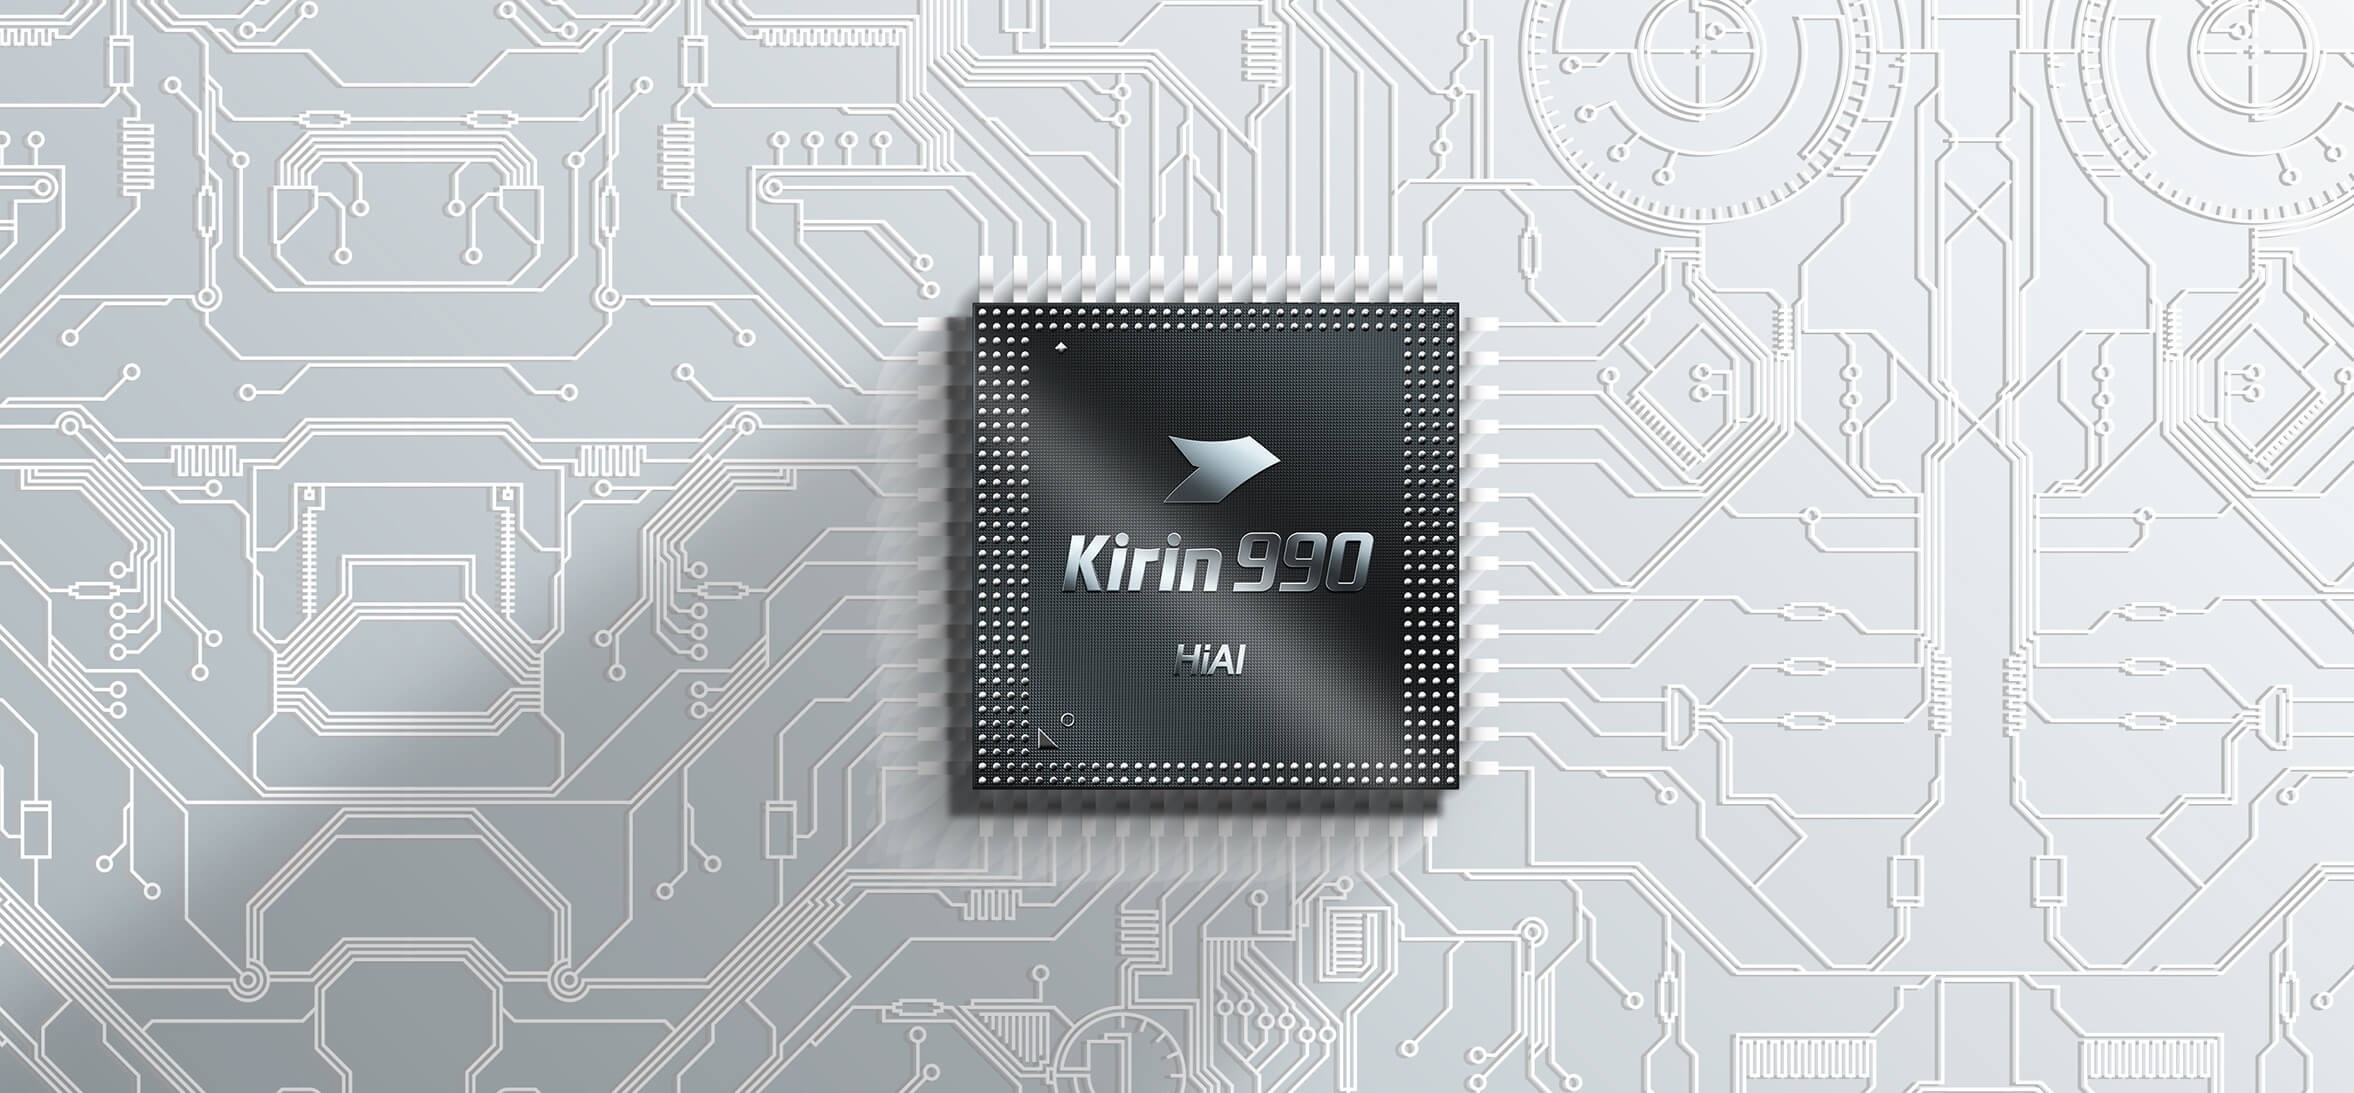 Kirin 990 jest jednym z procesorów, produkowanych przez TSMC